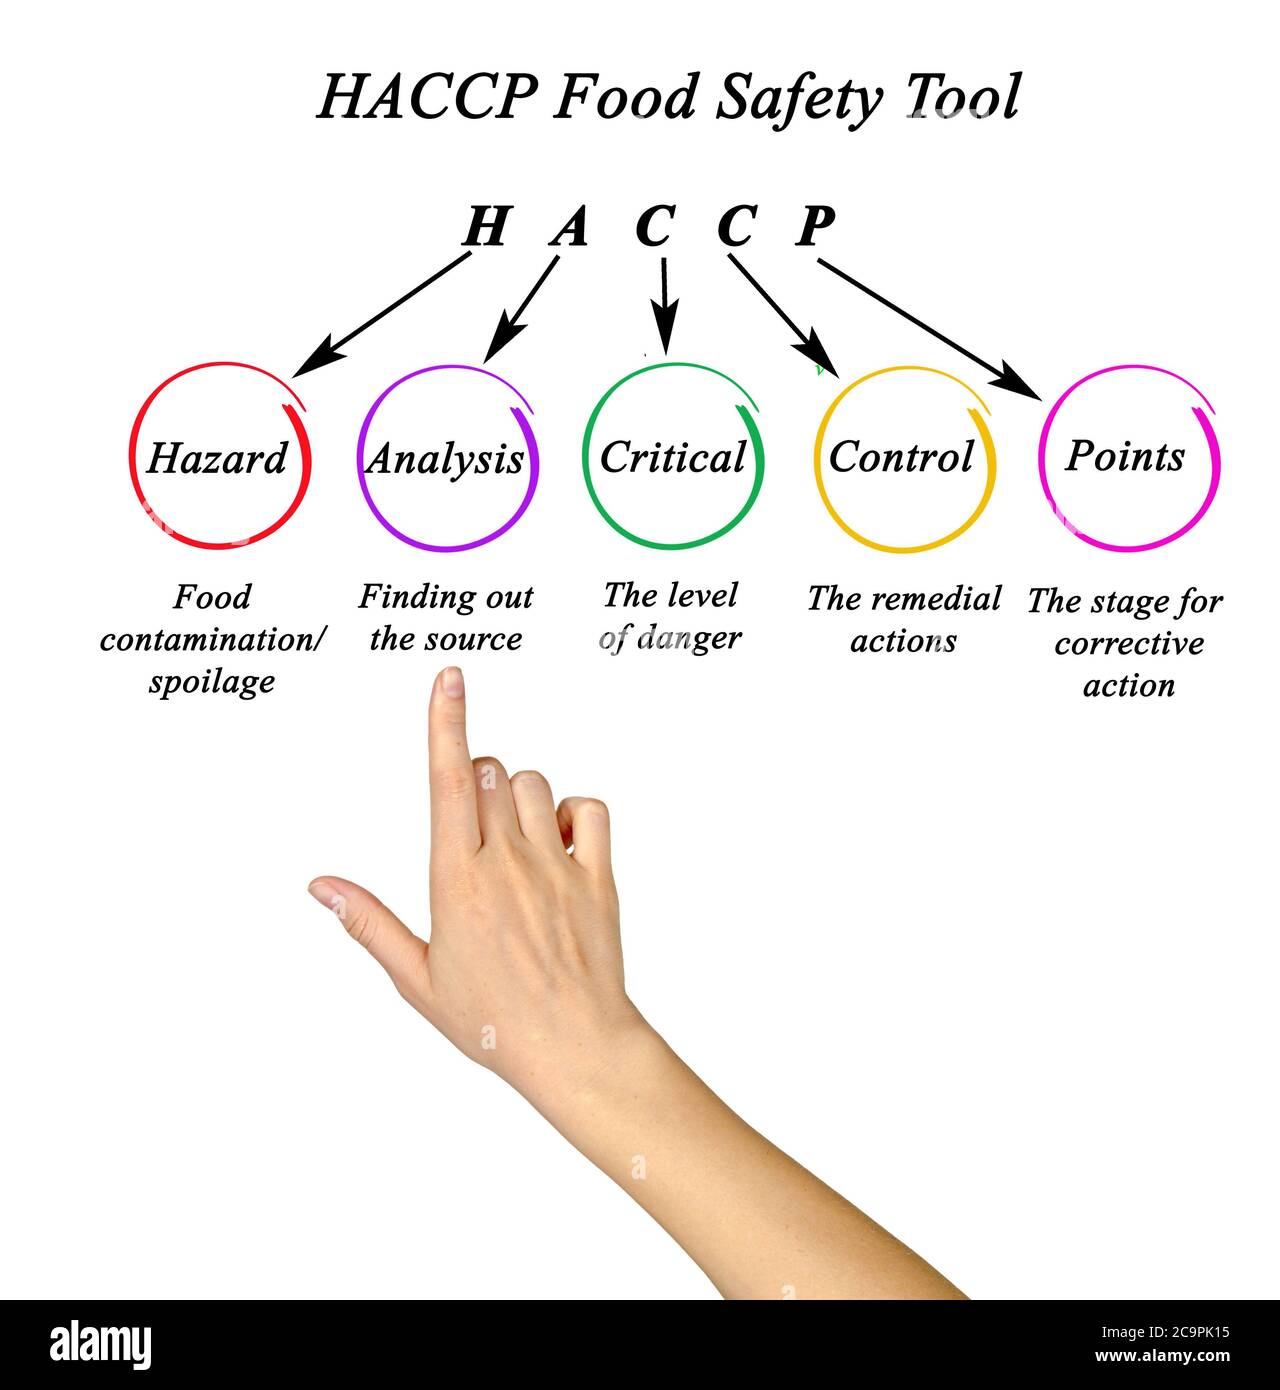 Composants de l'outil HACCP de sécurité alimentaire Photo Stock - Alamy